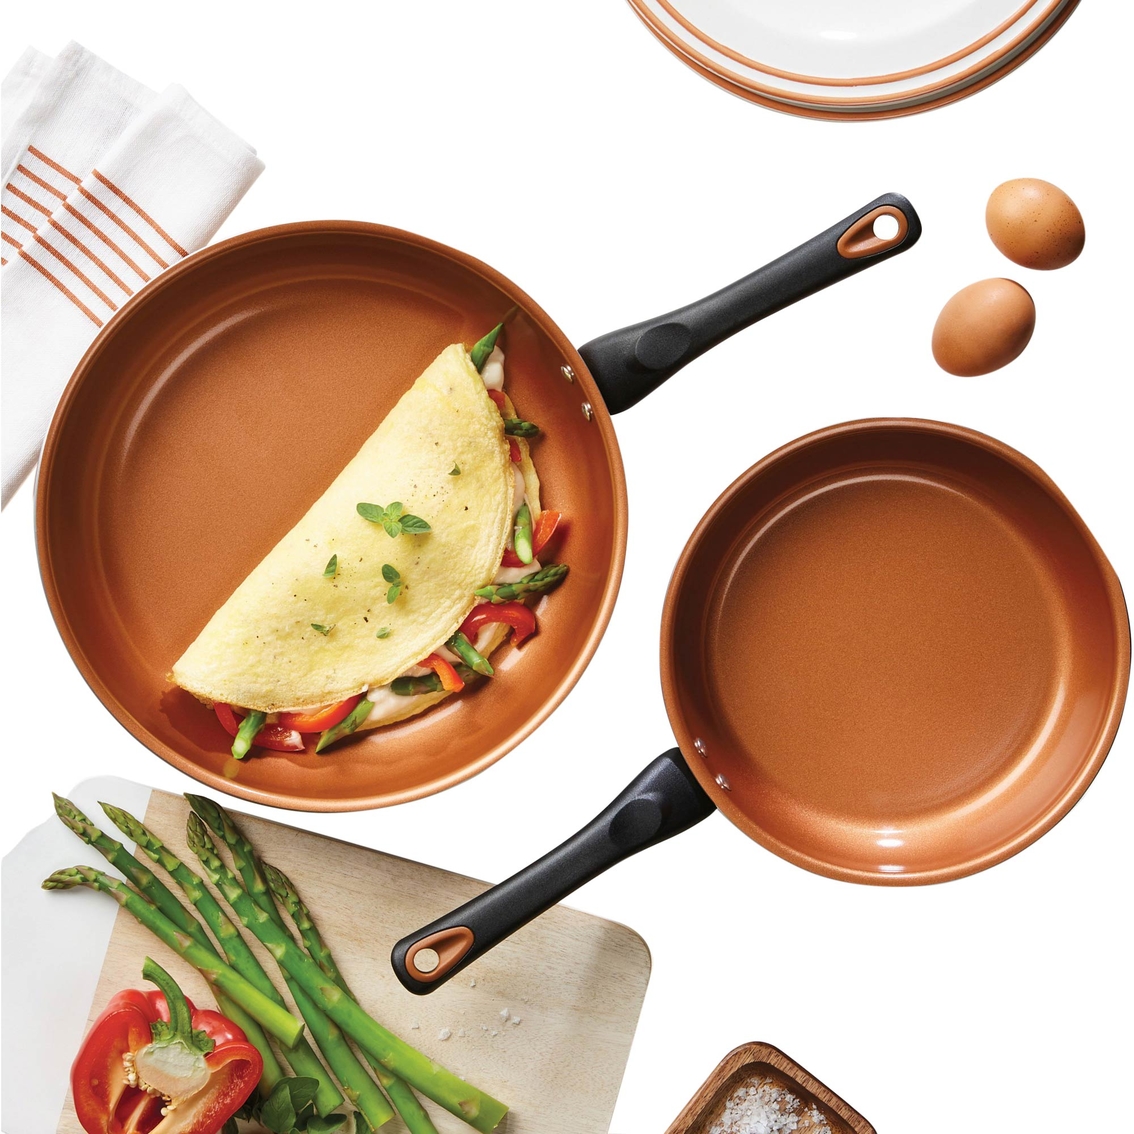 Farberware Glide Copper Ceramic Nonstick 12 pc. Cookware Set - Image 3 of 8